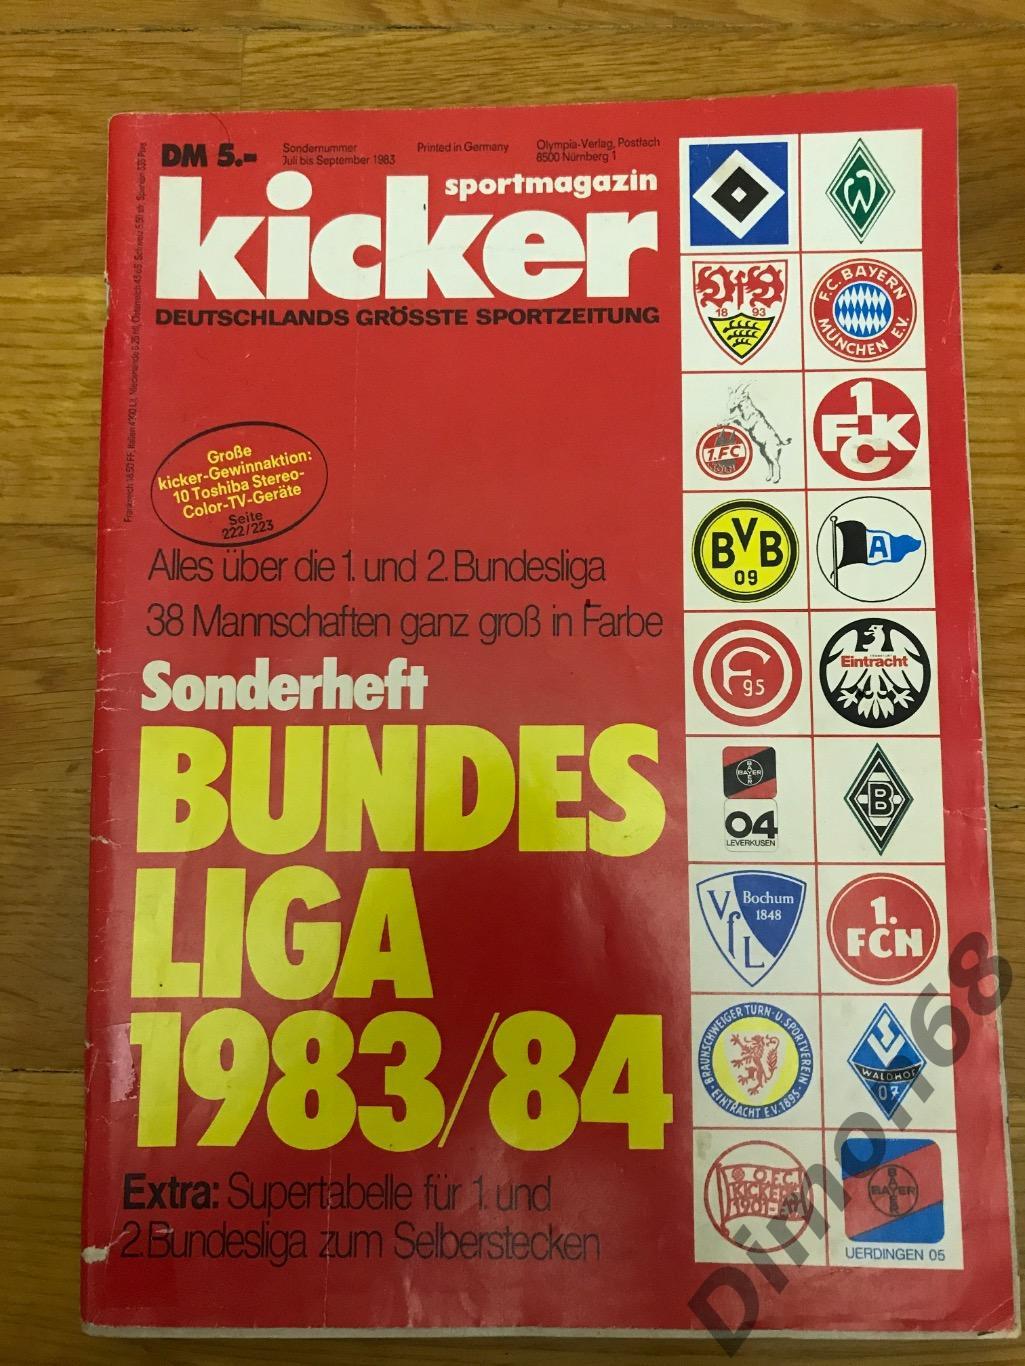 kicker бундеслига 1983/84